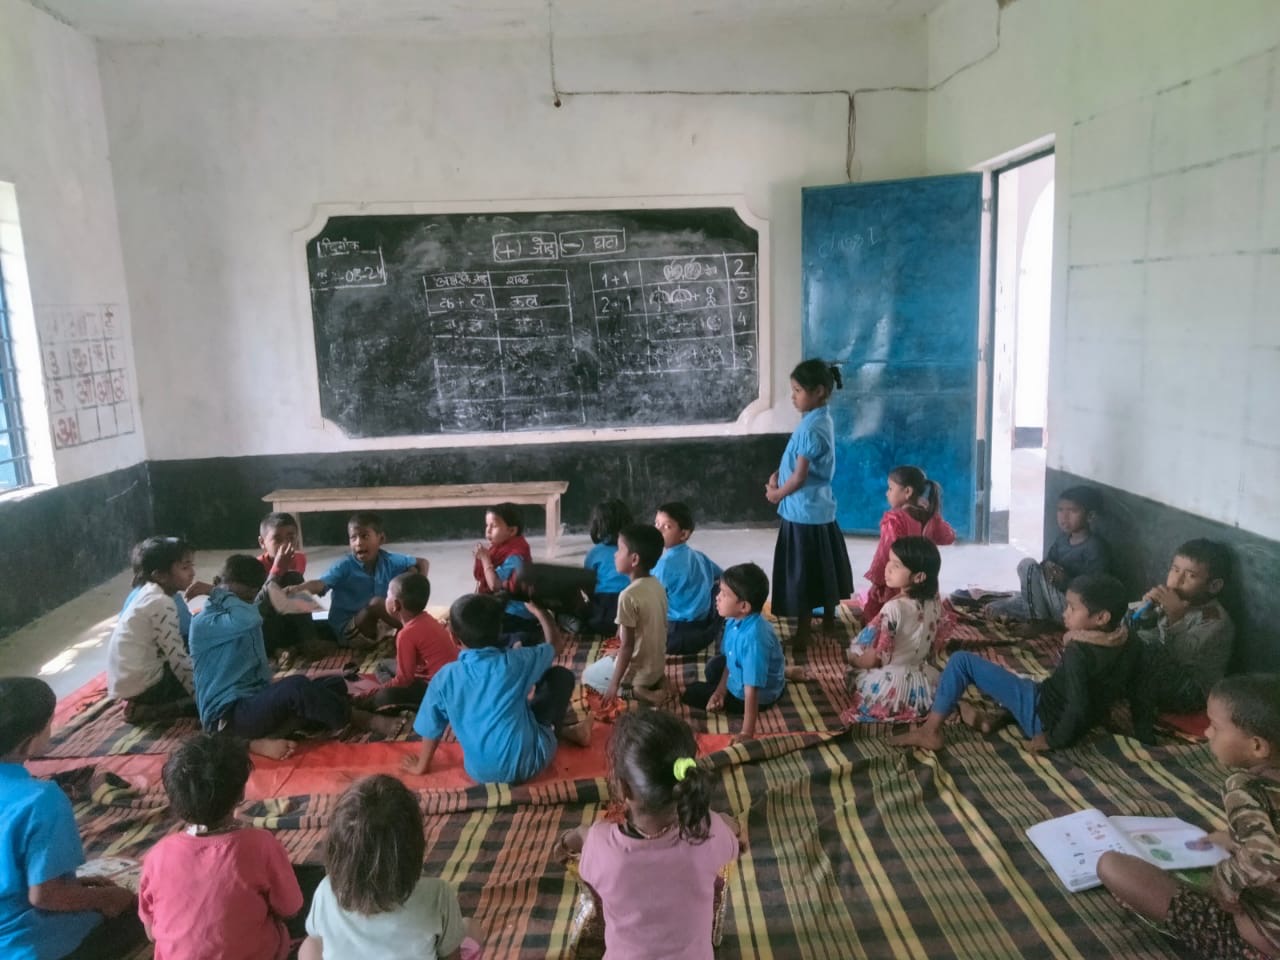 प्राथमिक विद्यालय मनाइखोर के छात्र-छात्राओं को पढ़ाई के जगह पर खेल कूद कर लौटना पड़ रहा है घर